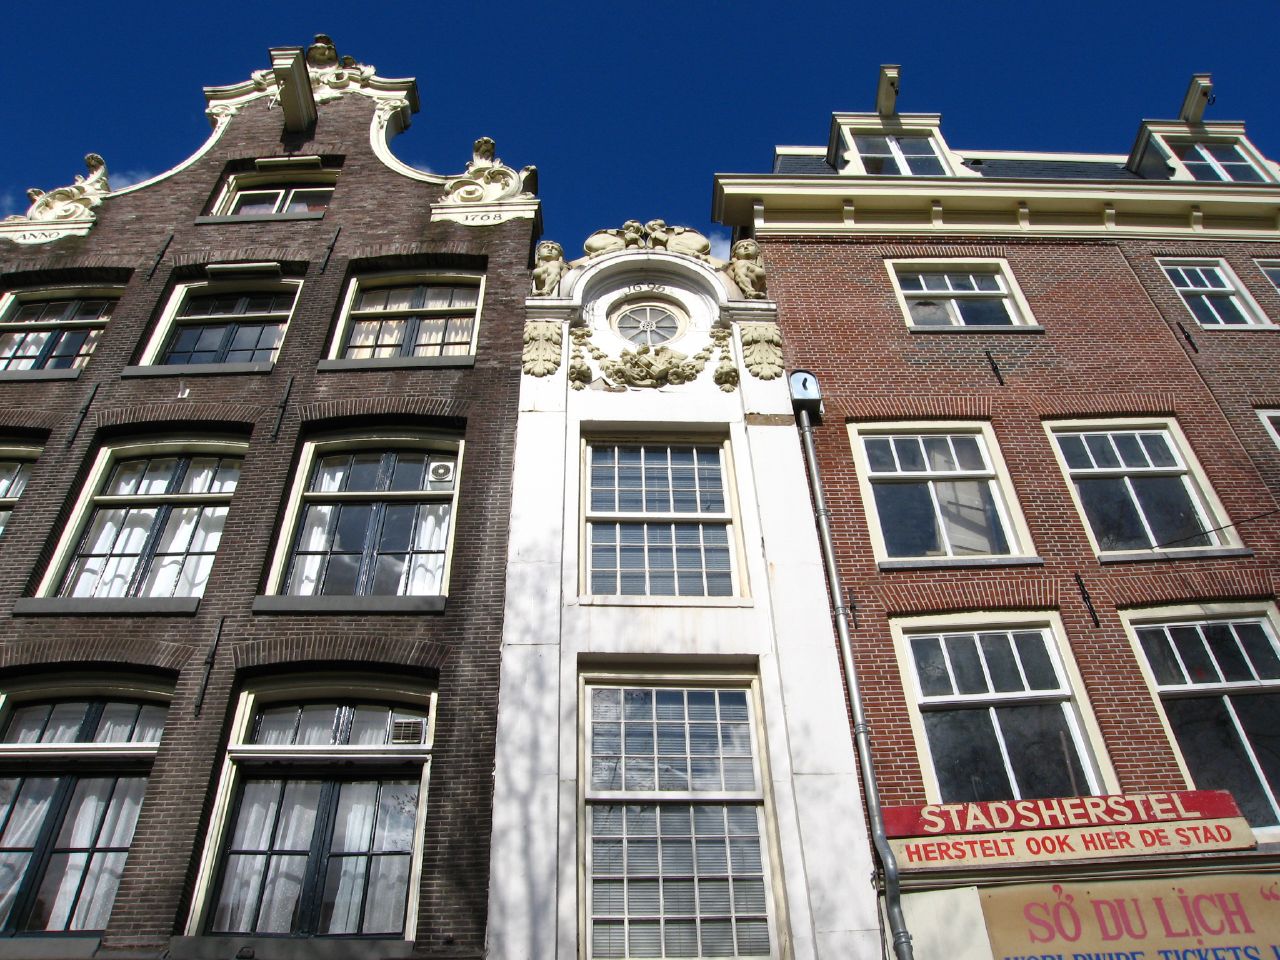 13. La casa del cochero del señor Tripp, la más estrecha de Ámsterdam. Justo en frente de la anterior. Autor, HenkLiu